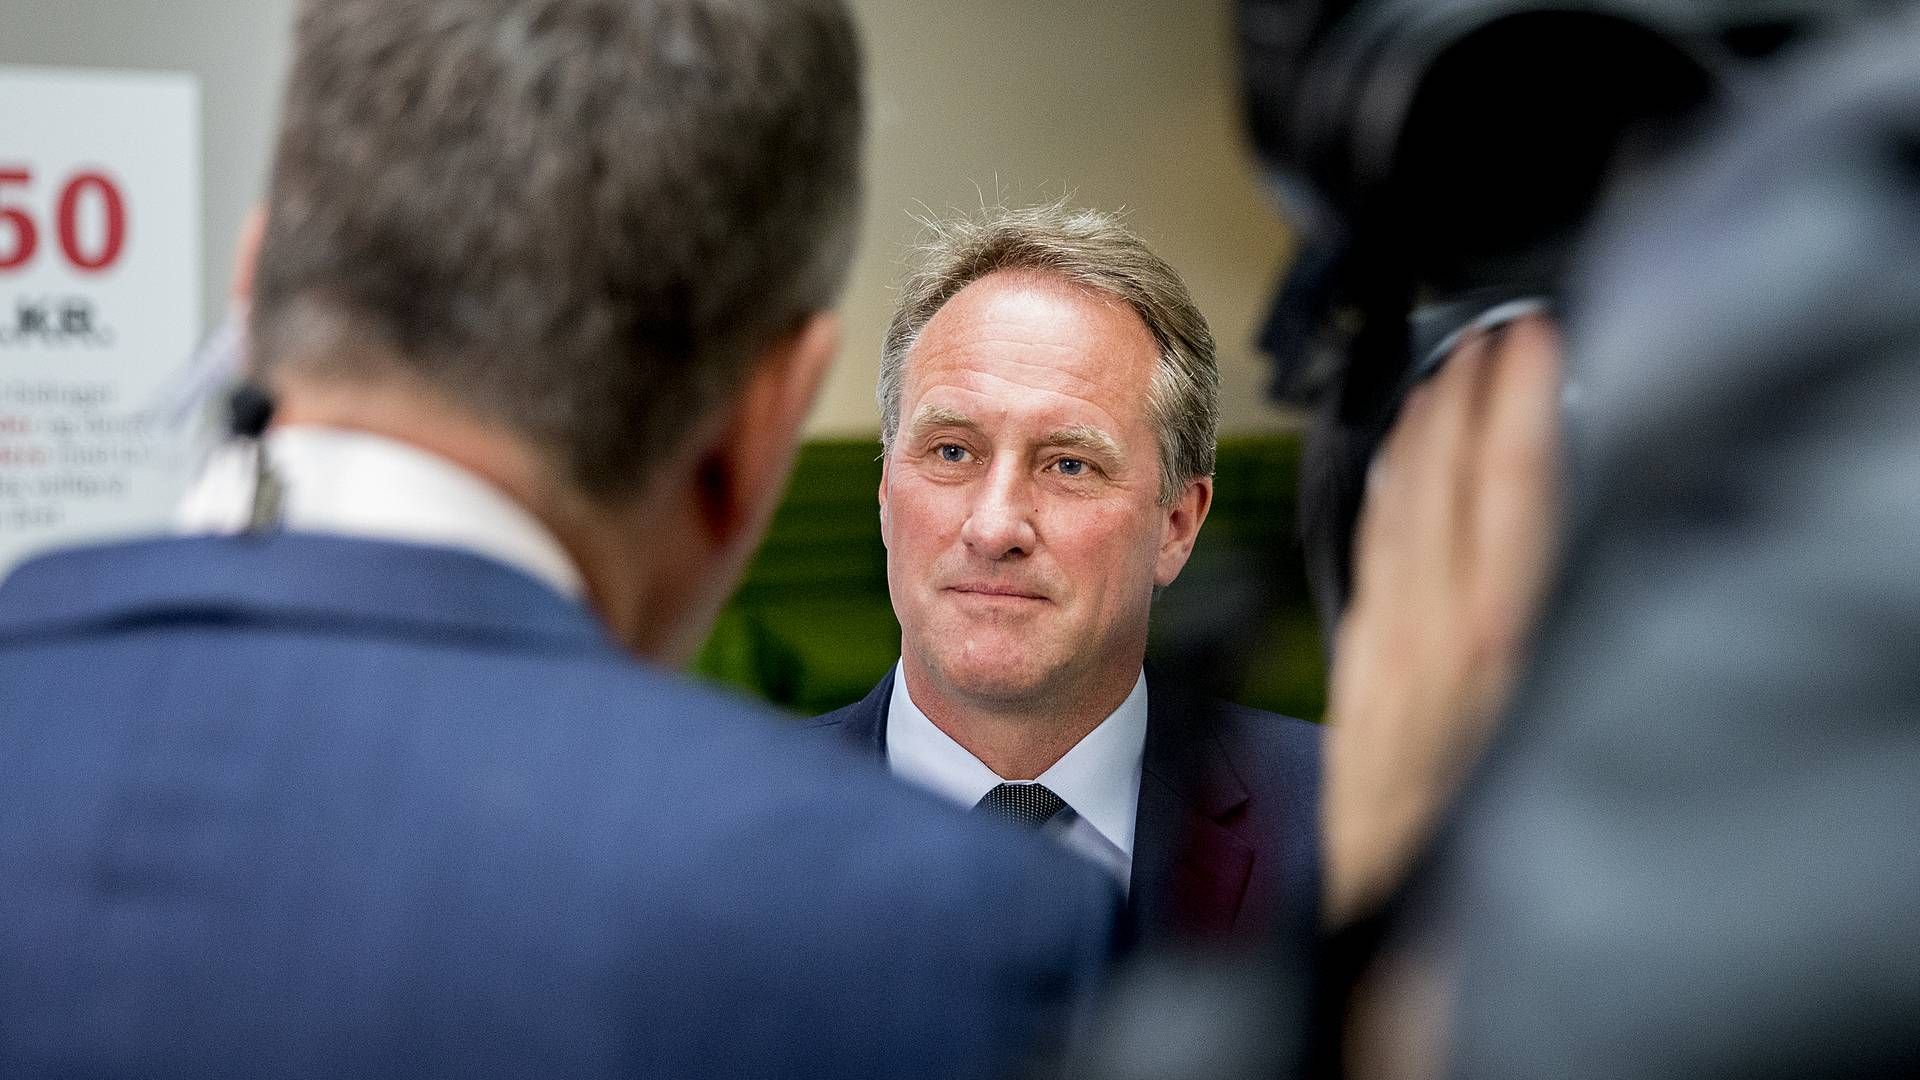 Adm. direktør Lars Sandahl Sørensen, DI. | Foto: Dansk Industri/Presse